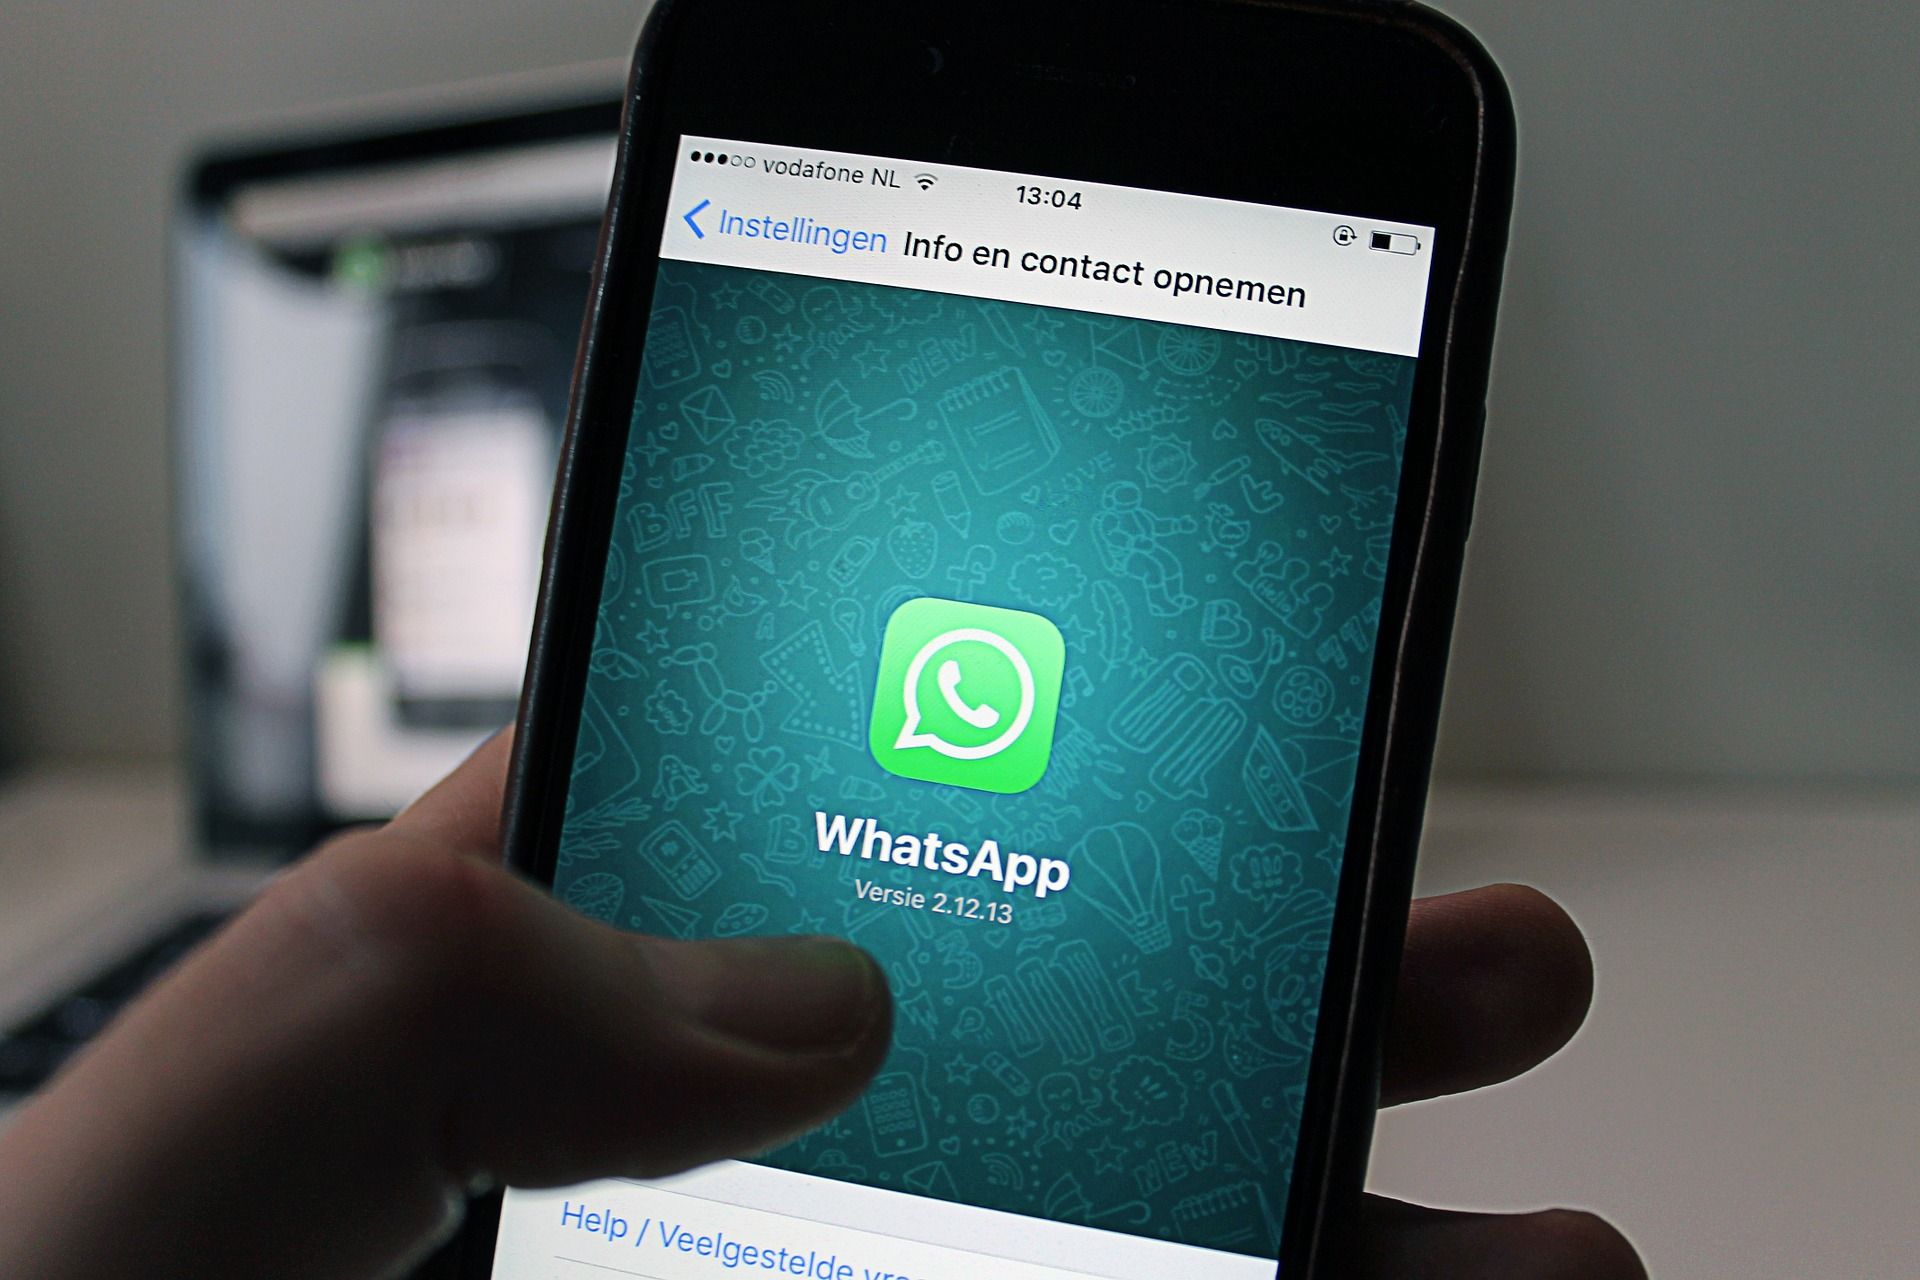 WhatsApp ने बदला अपना फैसला, 15 मई के बाद अब नहीं बंद होगा आपका अकाउंट